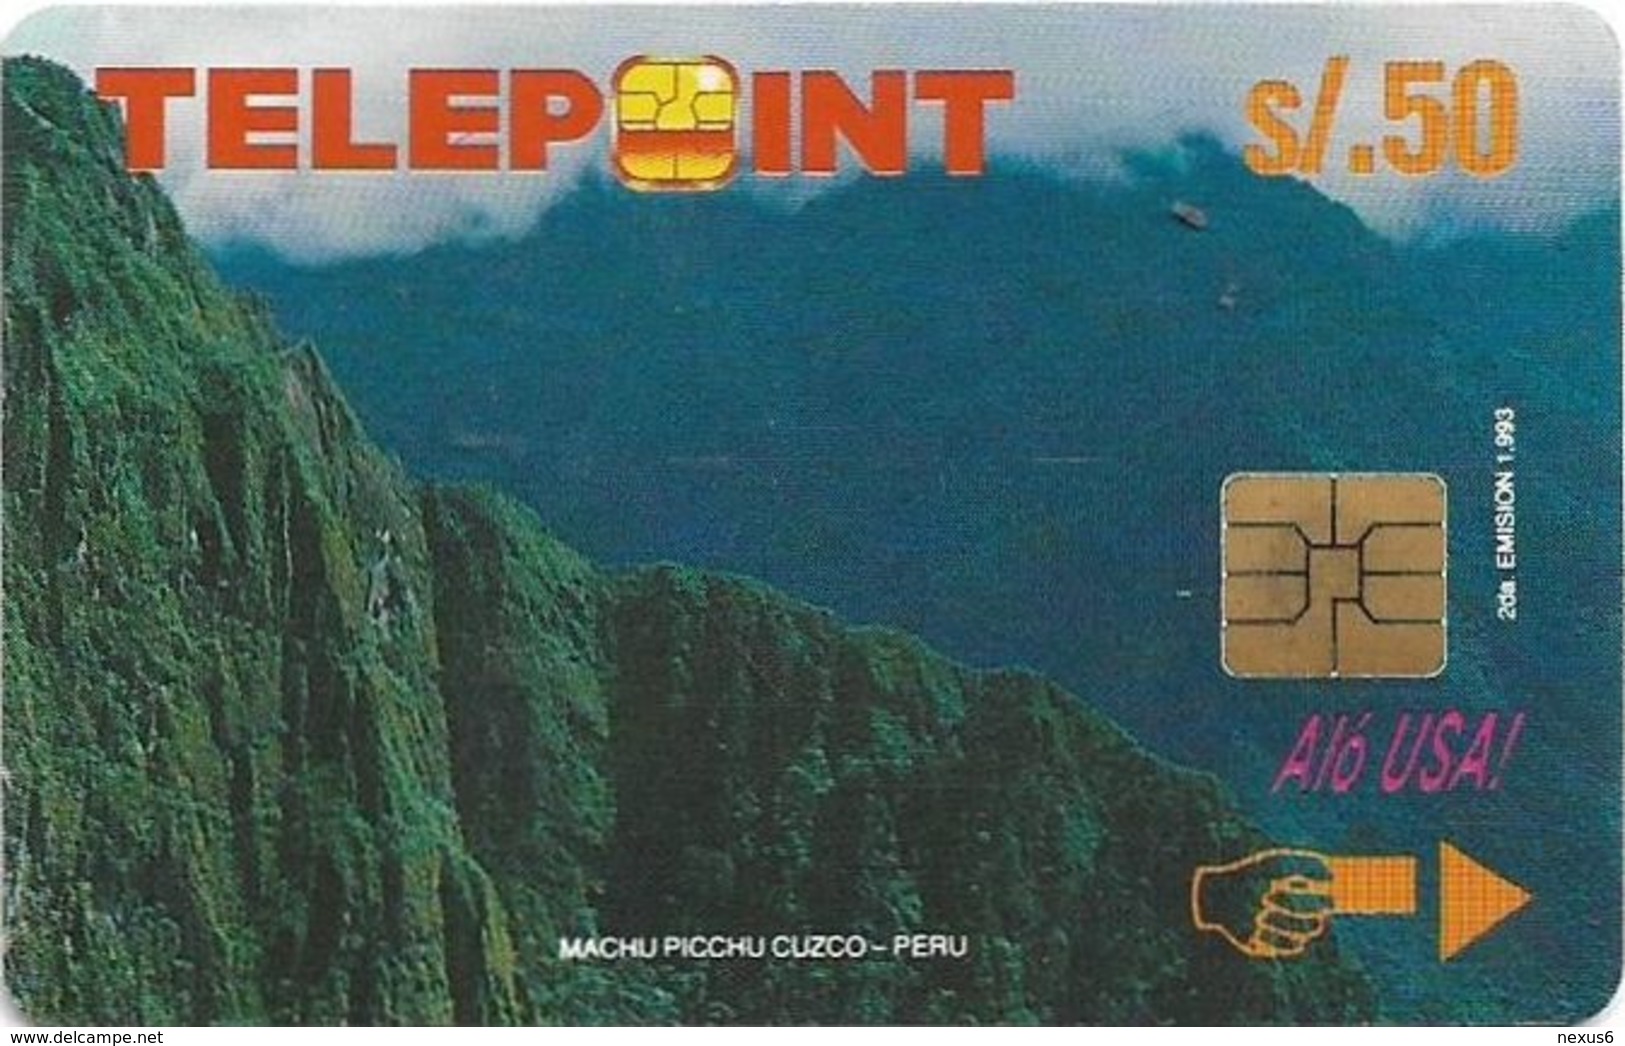 Peru - Telepoint - Machu Picchu Puzzle Piece 2/4 (Reverse 'Telecable'), 50Sol, 8.500ex, Used - Peru